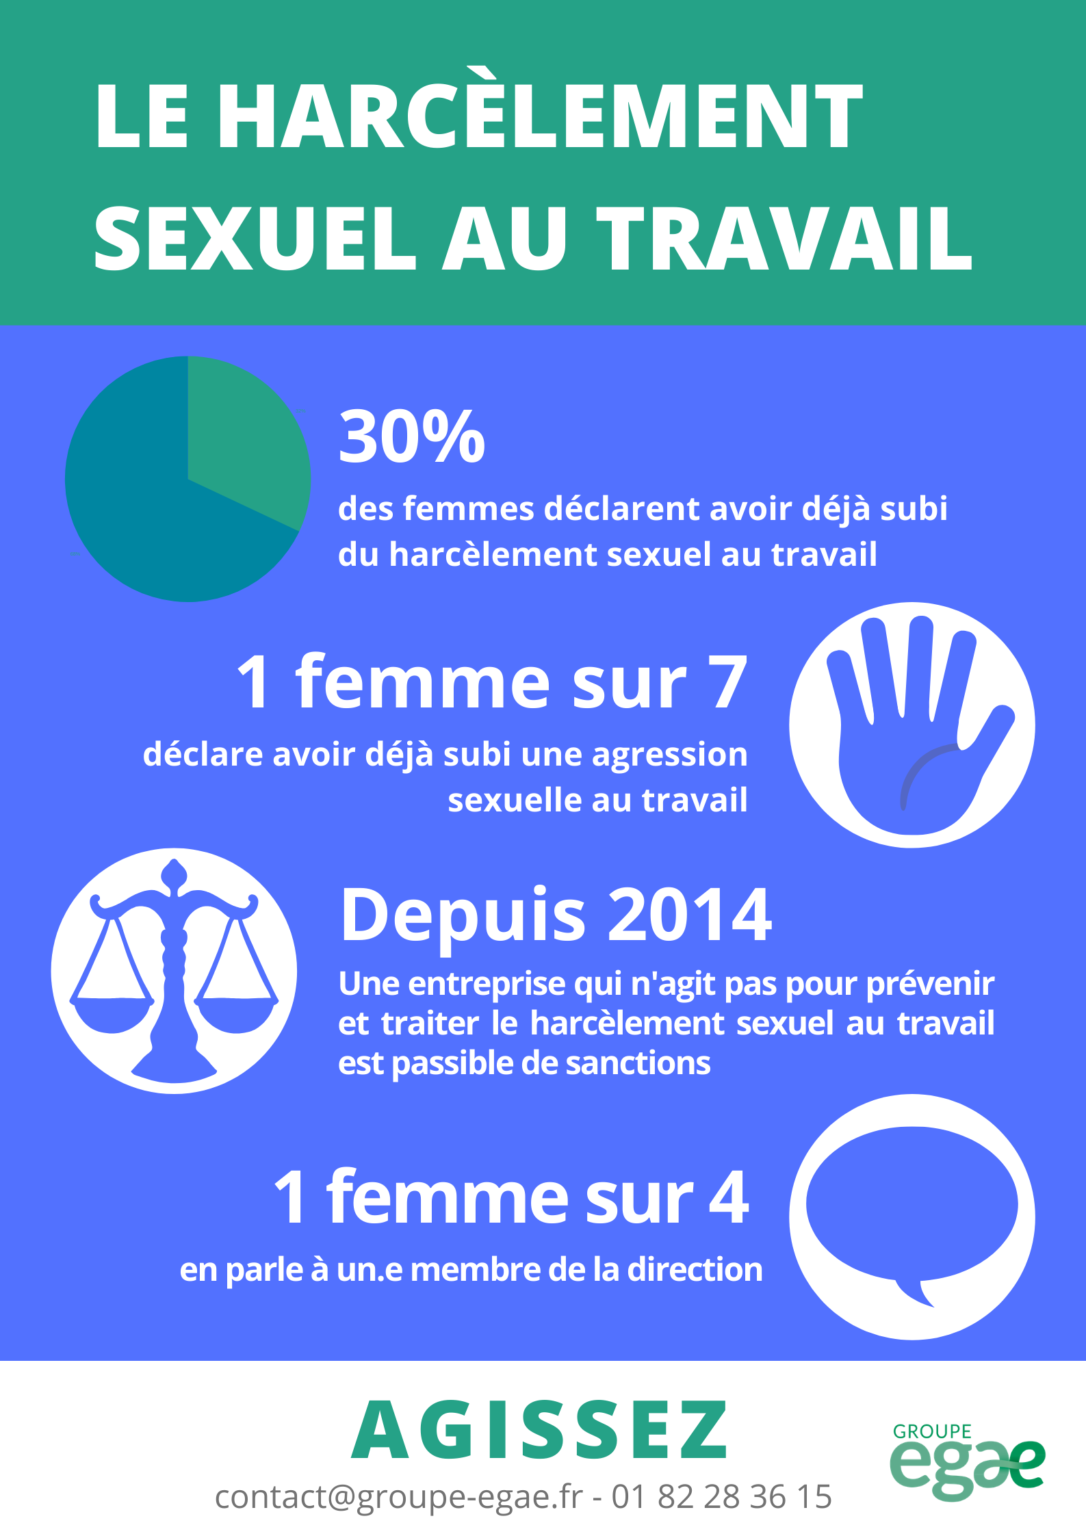 Le Harcèlement Sexuel Au Travail Les Chiffres Clés Egalactu | Free ...